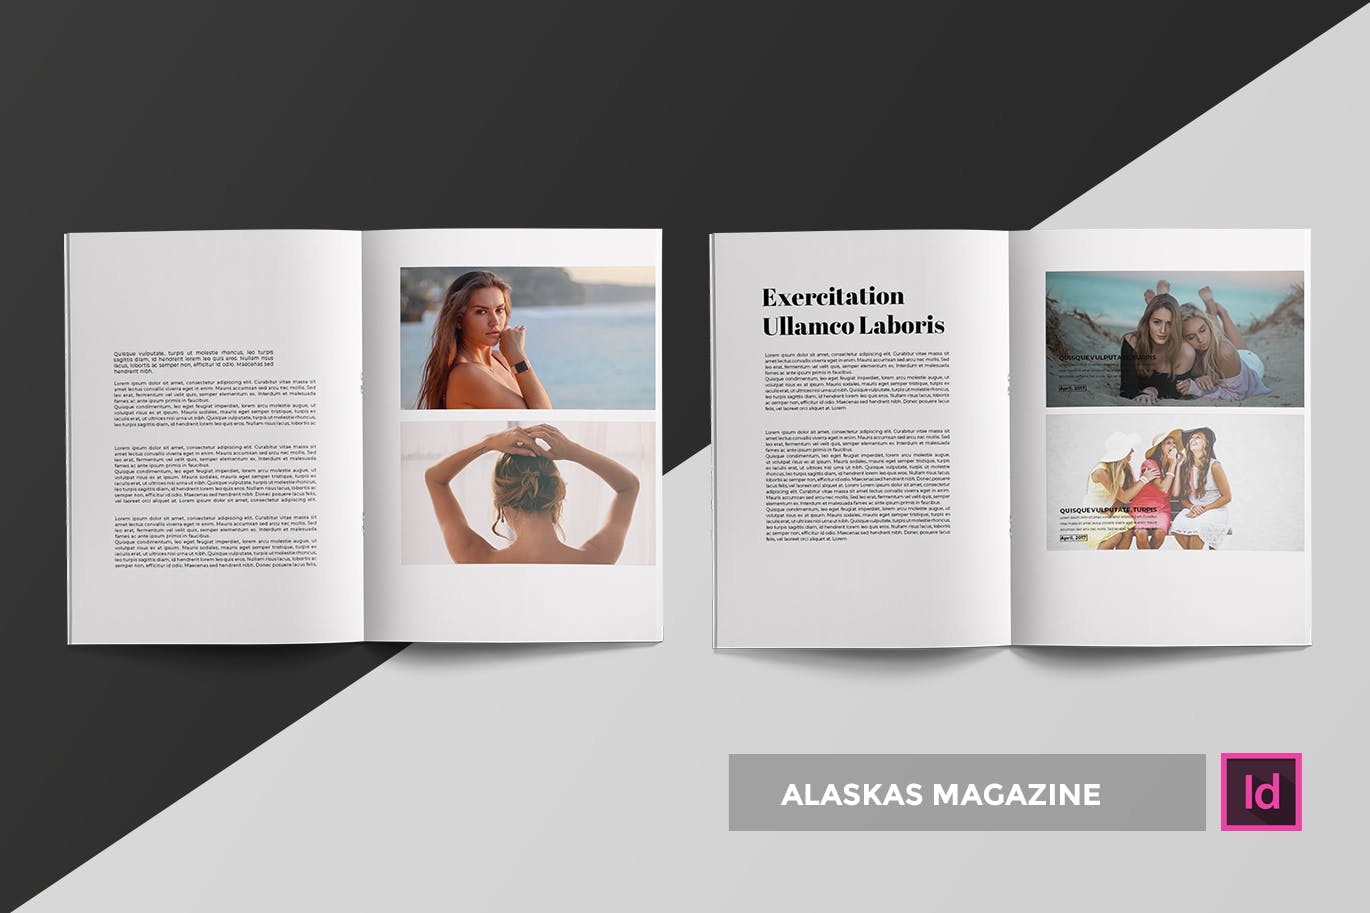 高端人物/服装/访谈主题第一素材精选杂志版式排版设计INDD模板 Alaskas | Magazine Template插图(1)